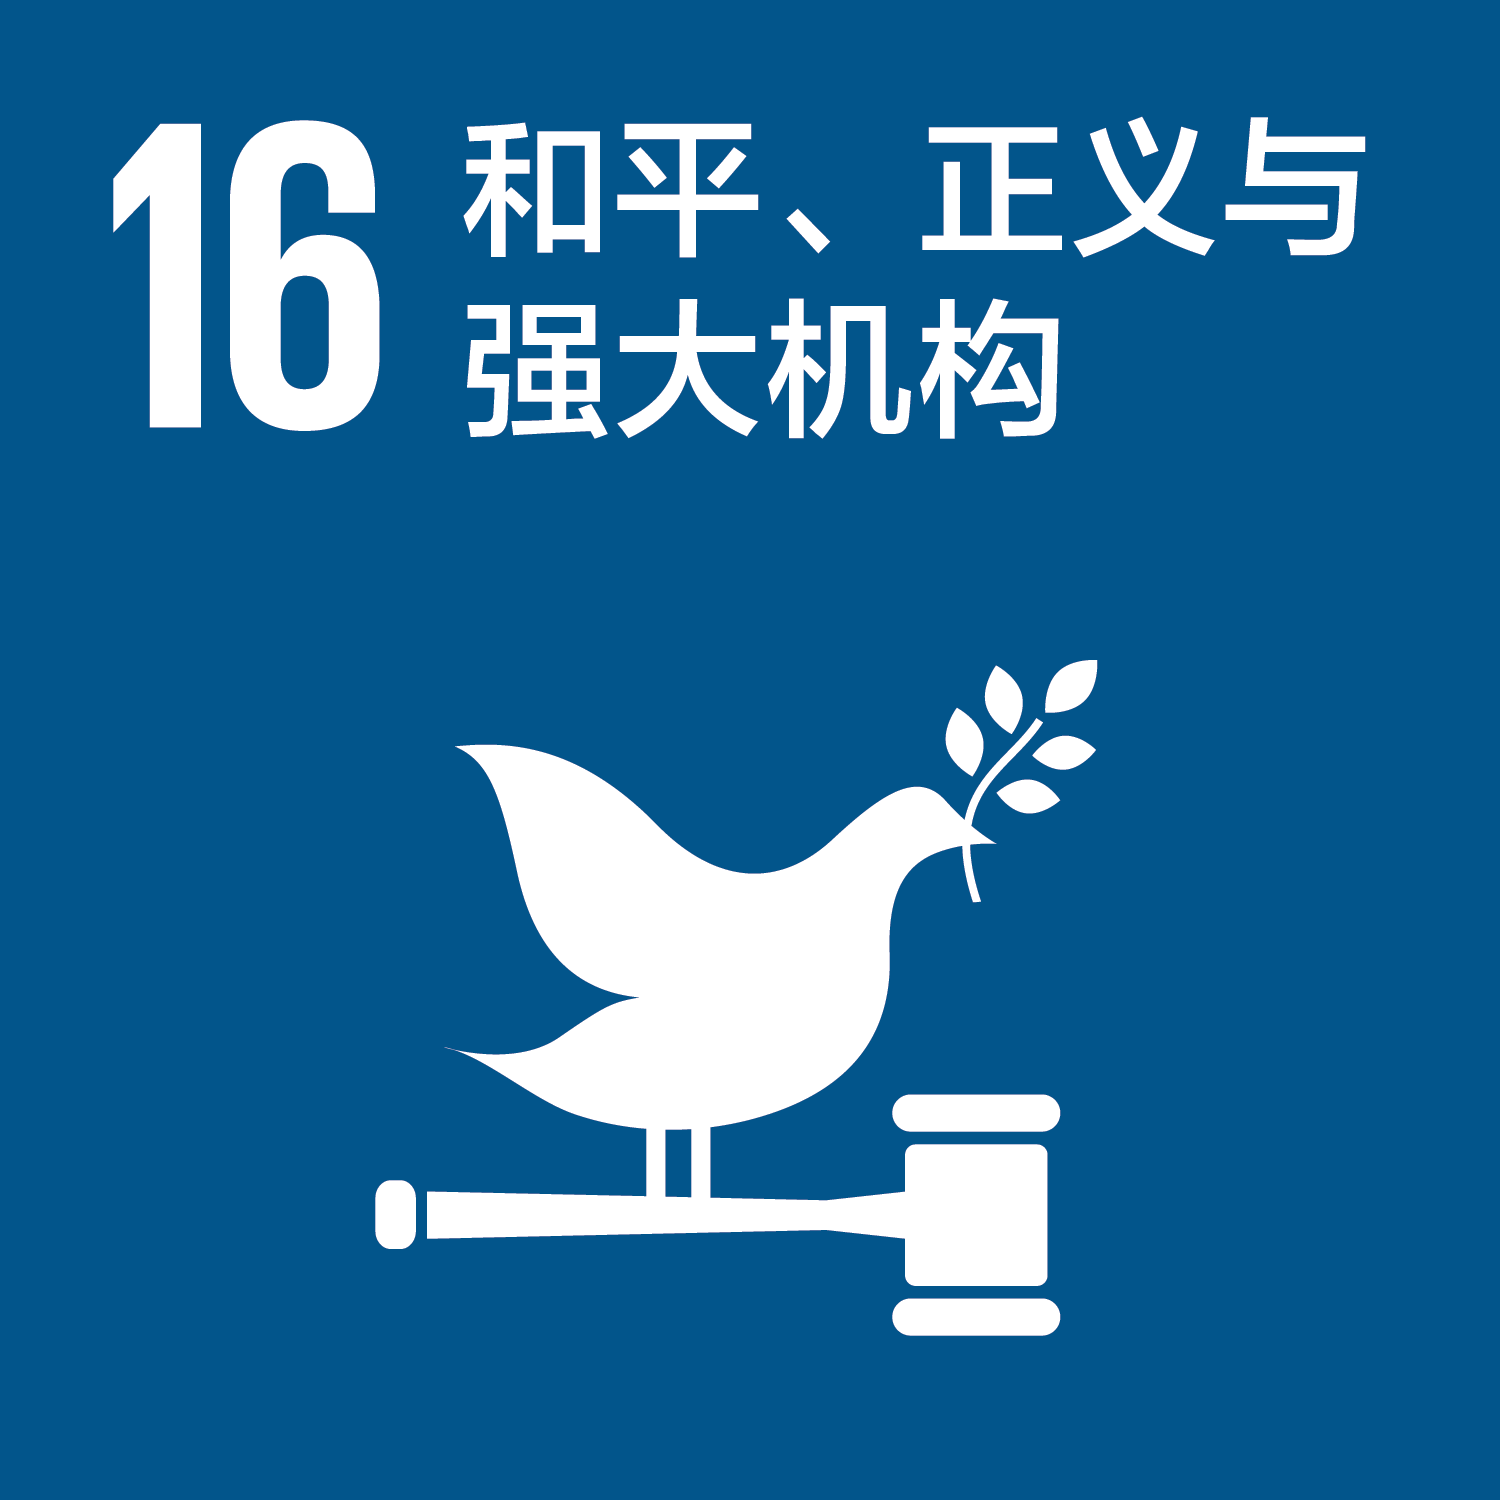 可持续发展目标16